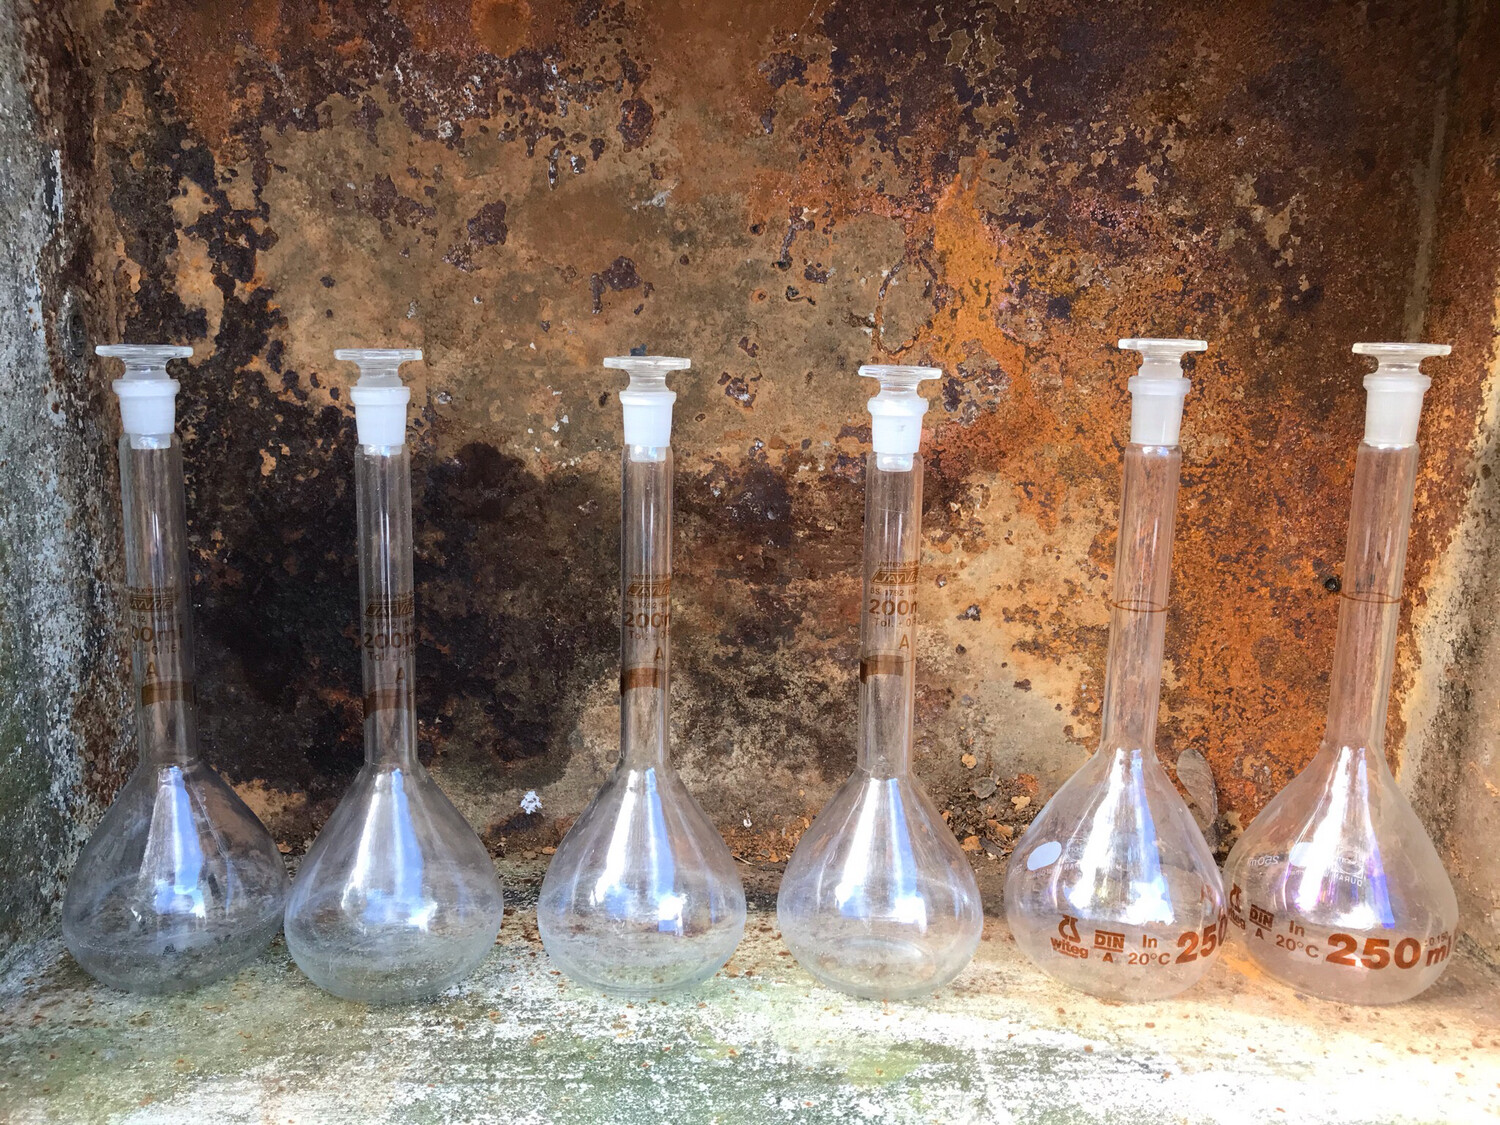 Laboratorium maatkolf glas